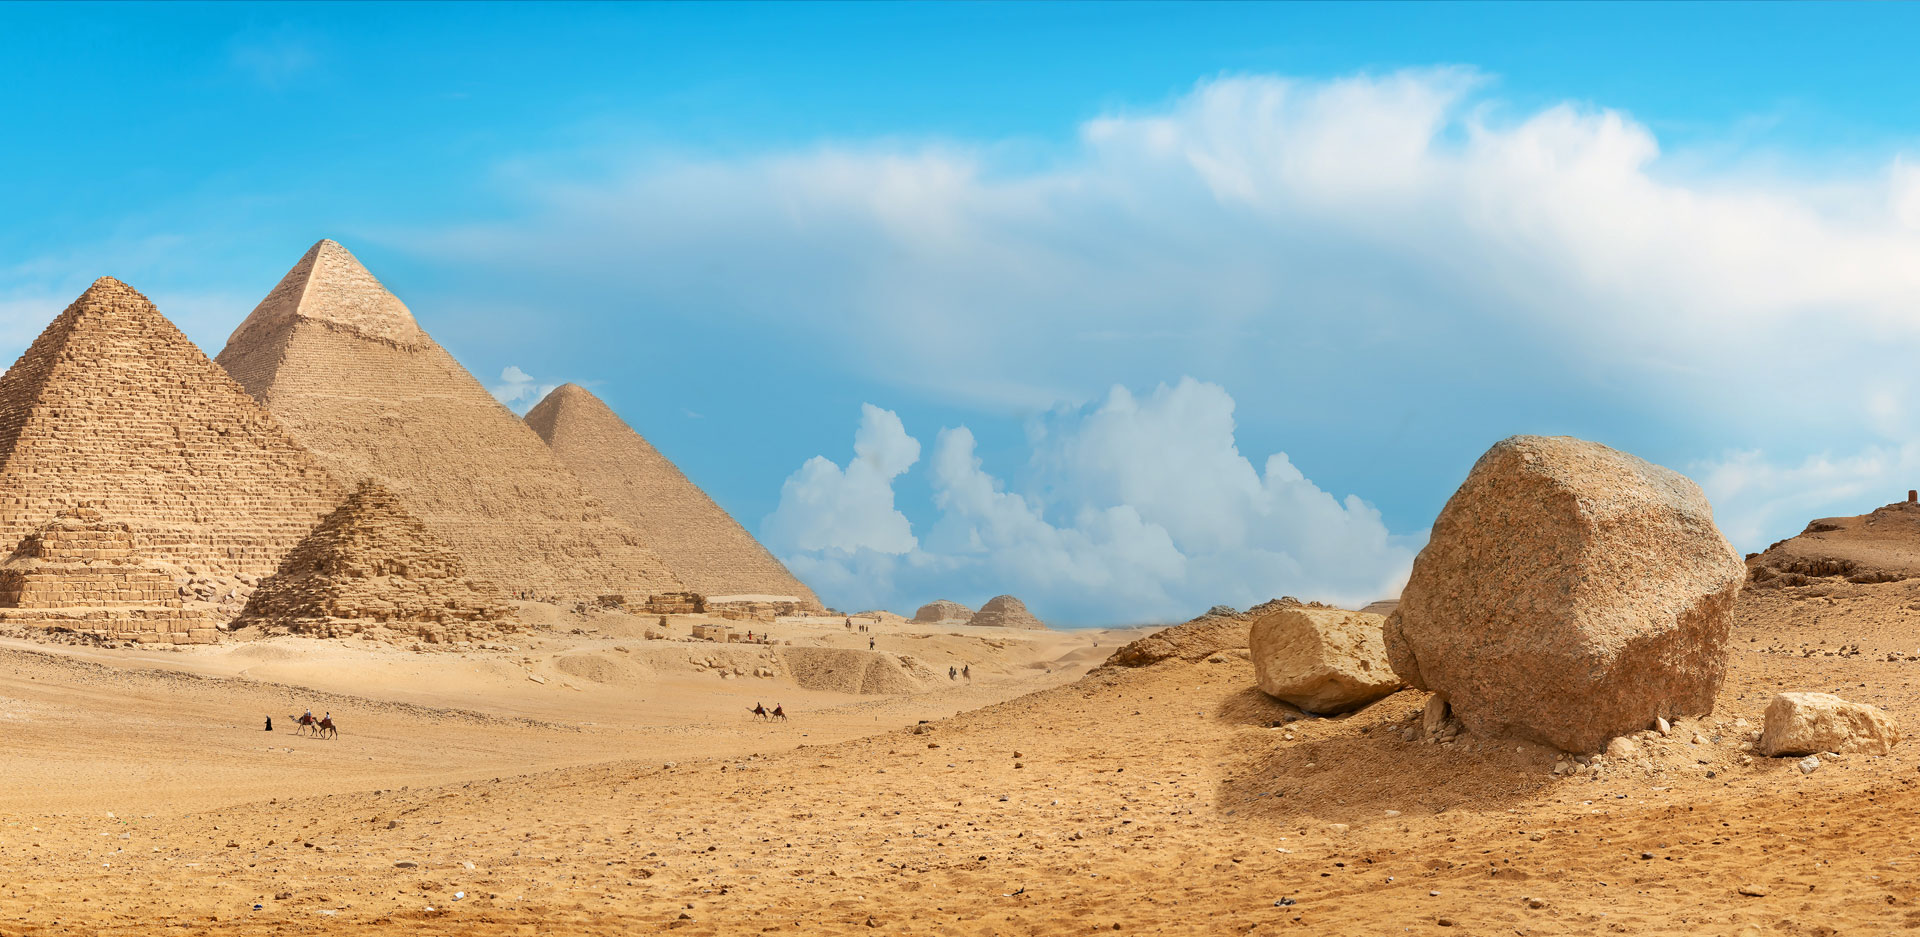 Ägypten – einmal im Leben Pyramiden sehen!